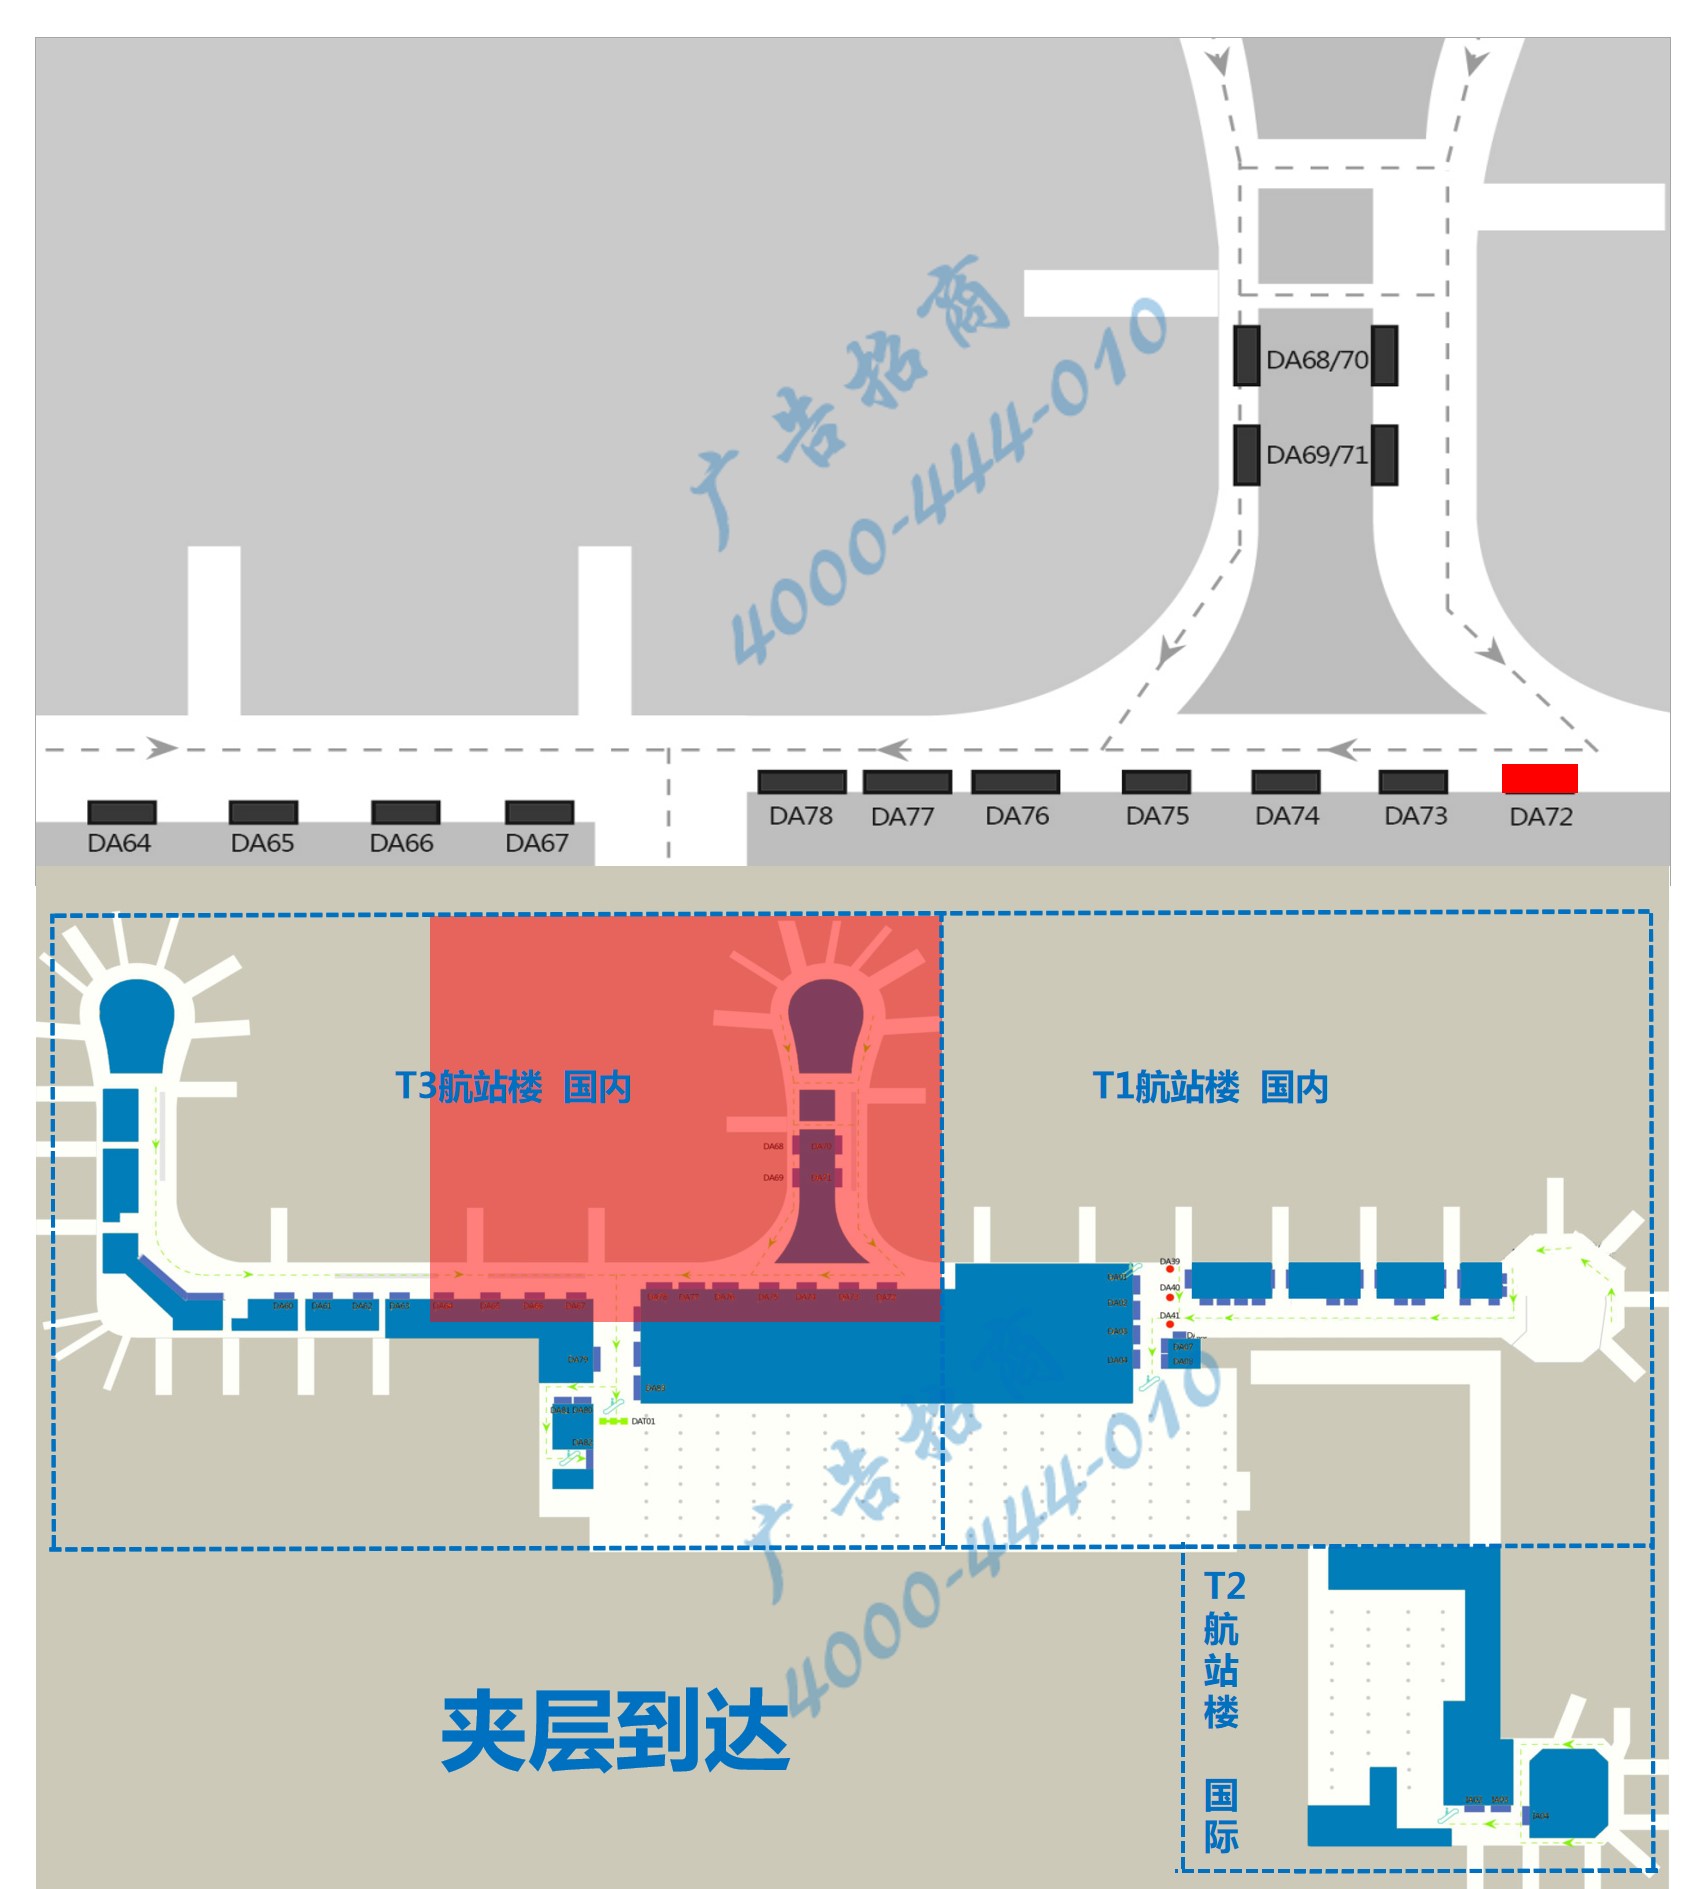 杭州萧山机场广告-T3到达通廊灯箱DA72位置图